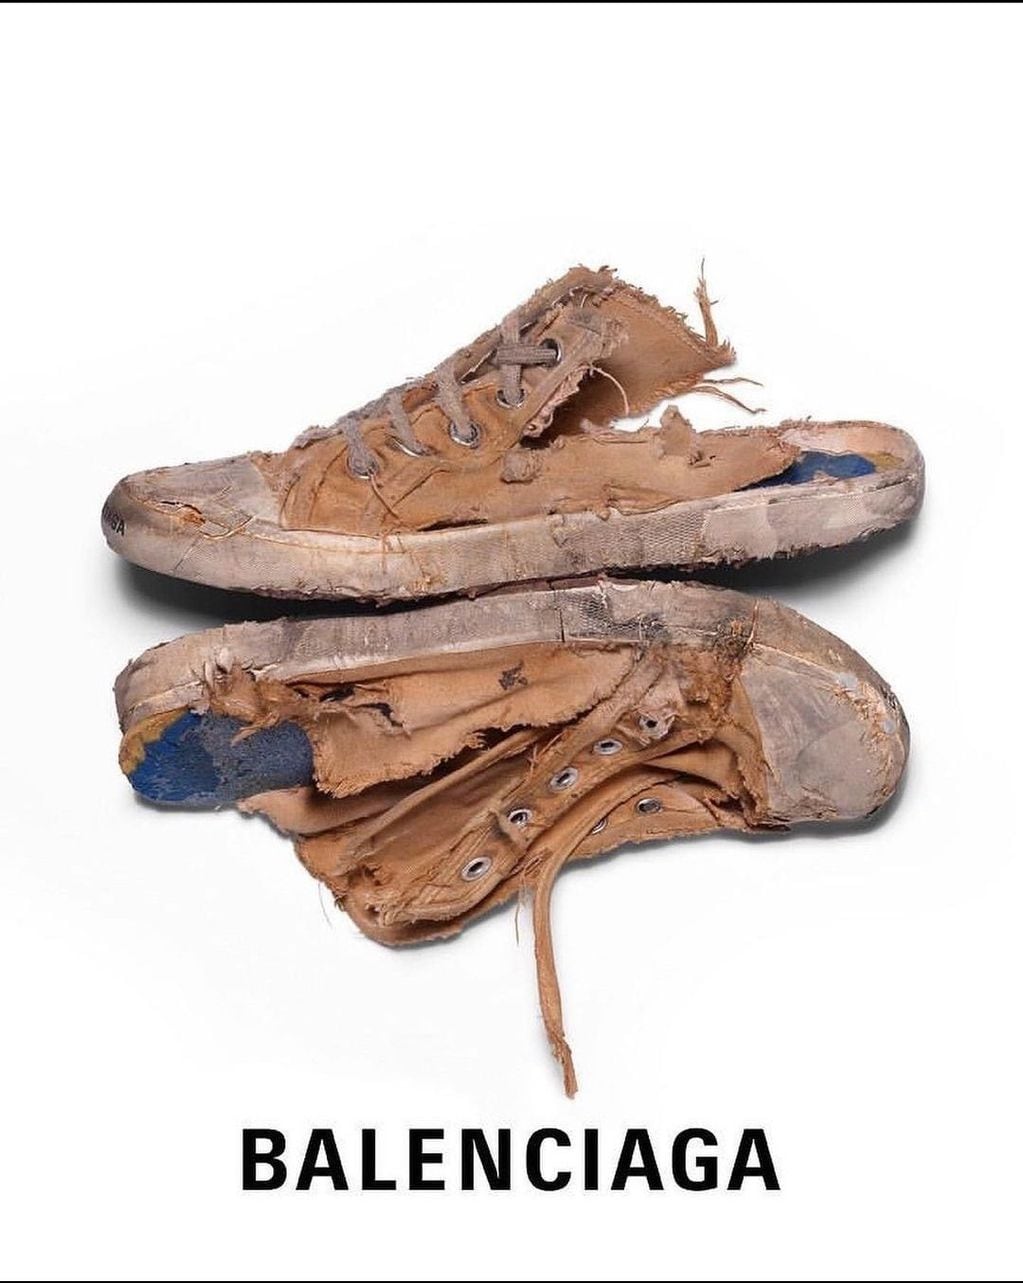 Las imágenes promocionales que publicó Balenciaga generaron todo tipo de opiniones.